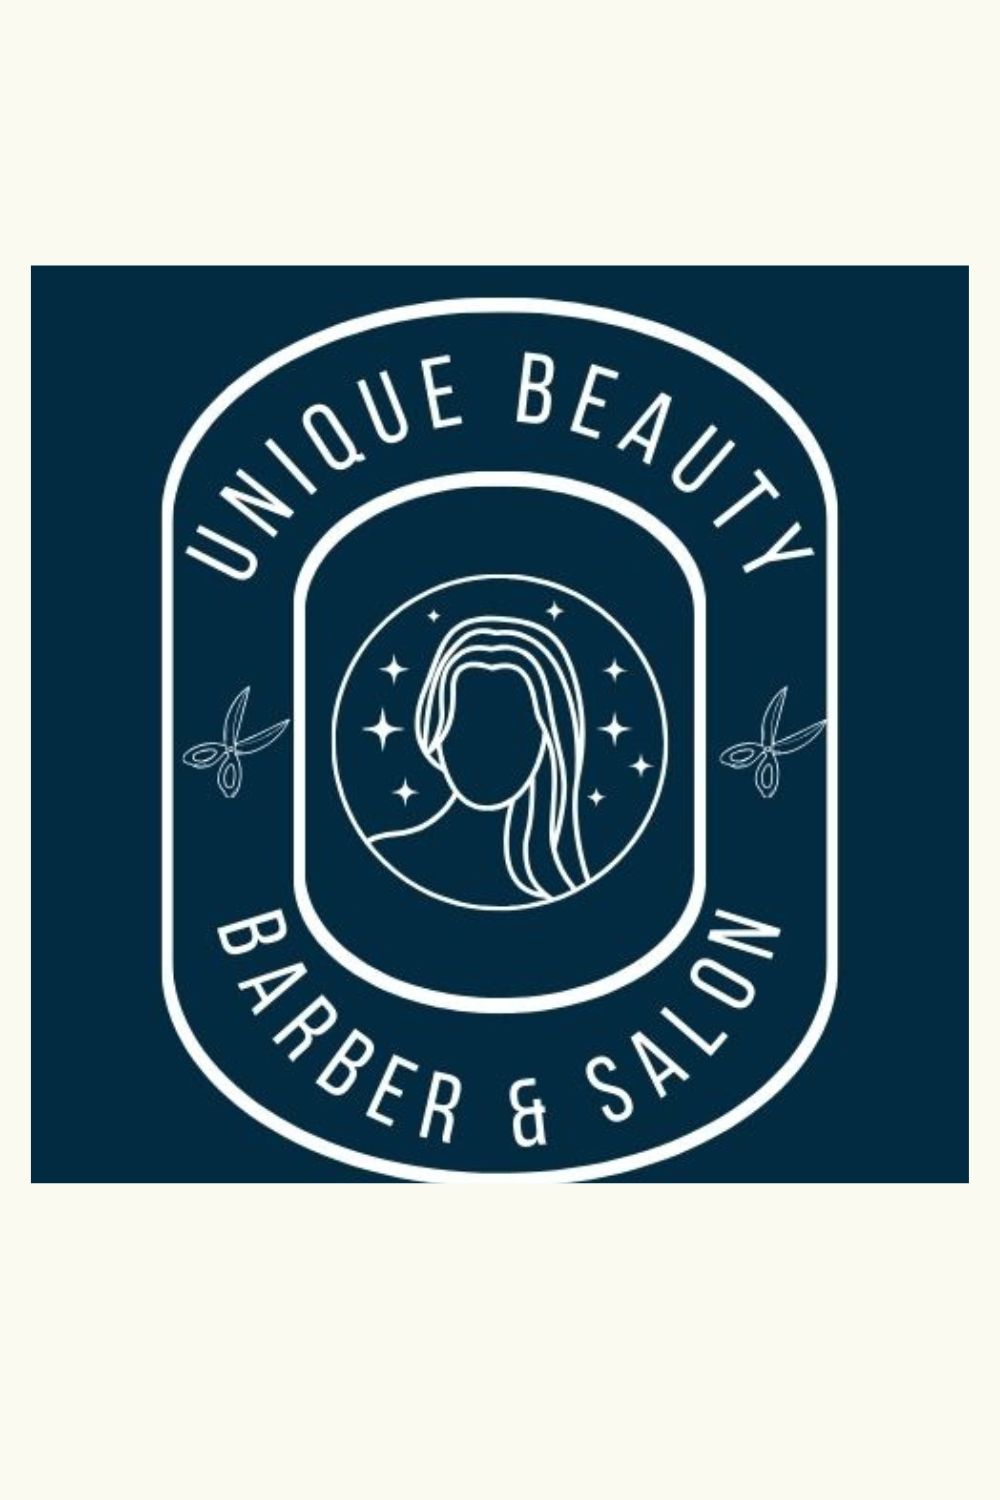 Unique Barber & Beauty Shop Logo Template pinterest preview image.